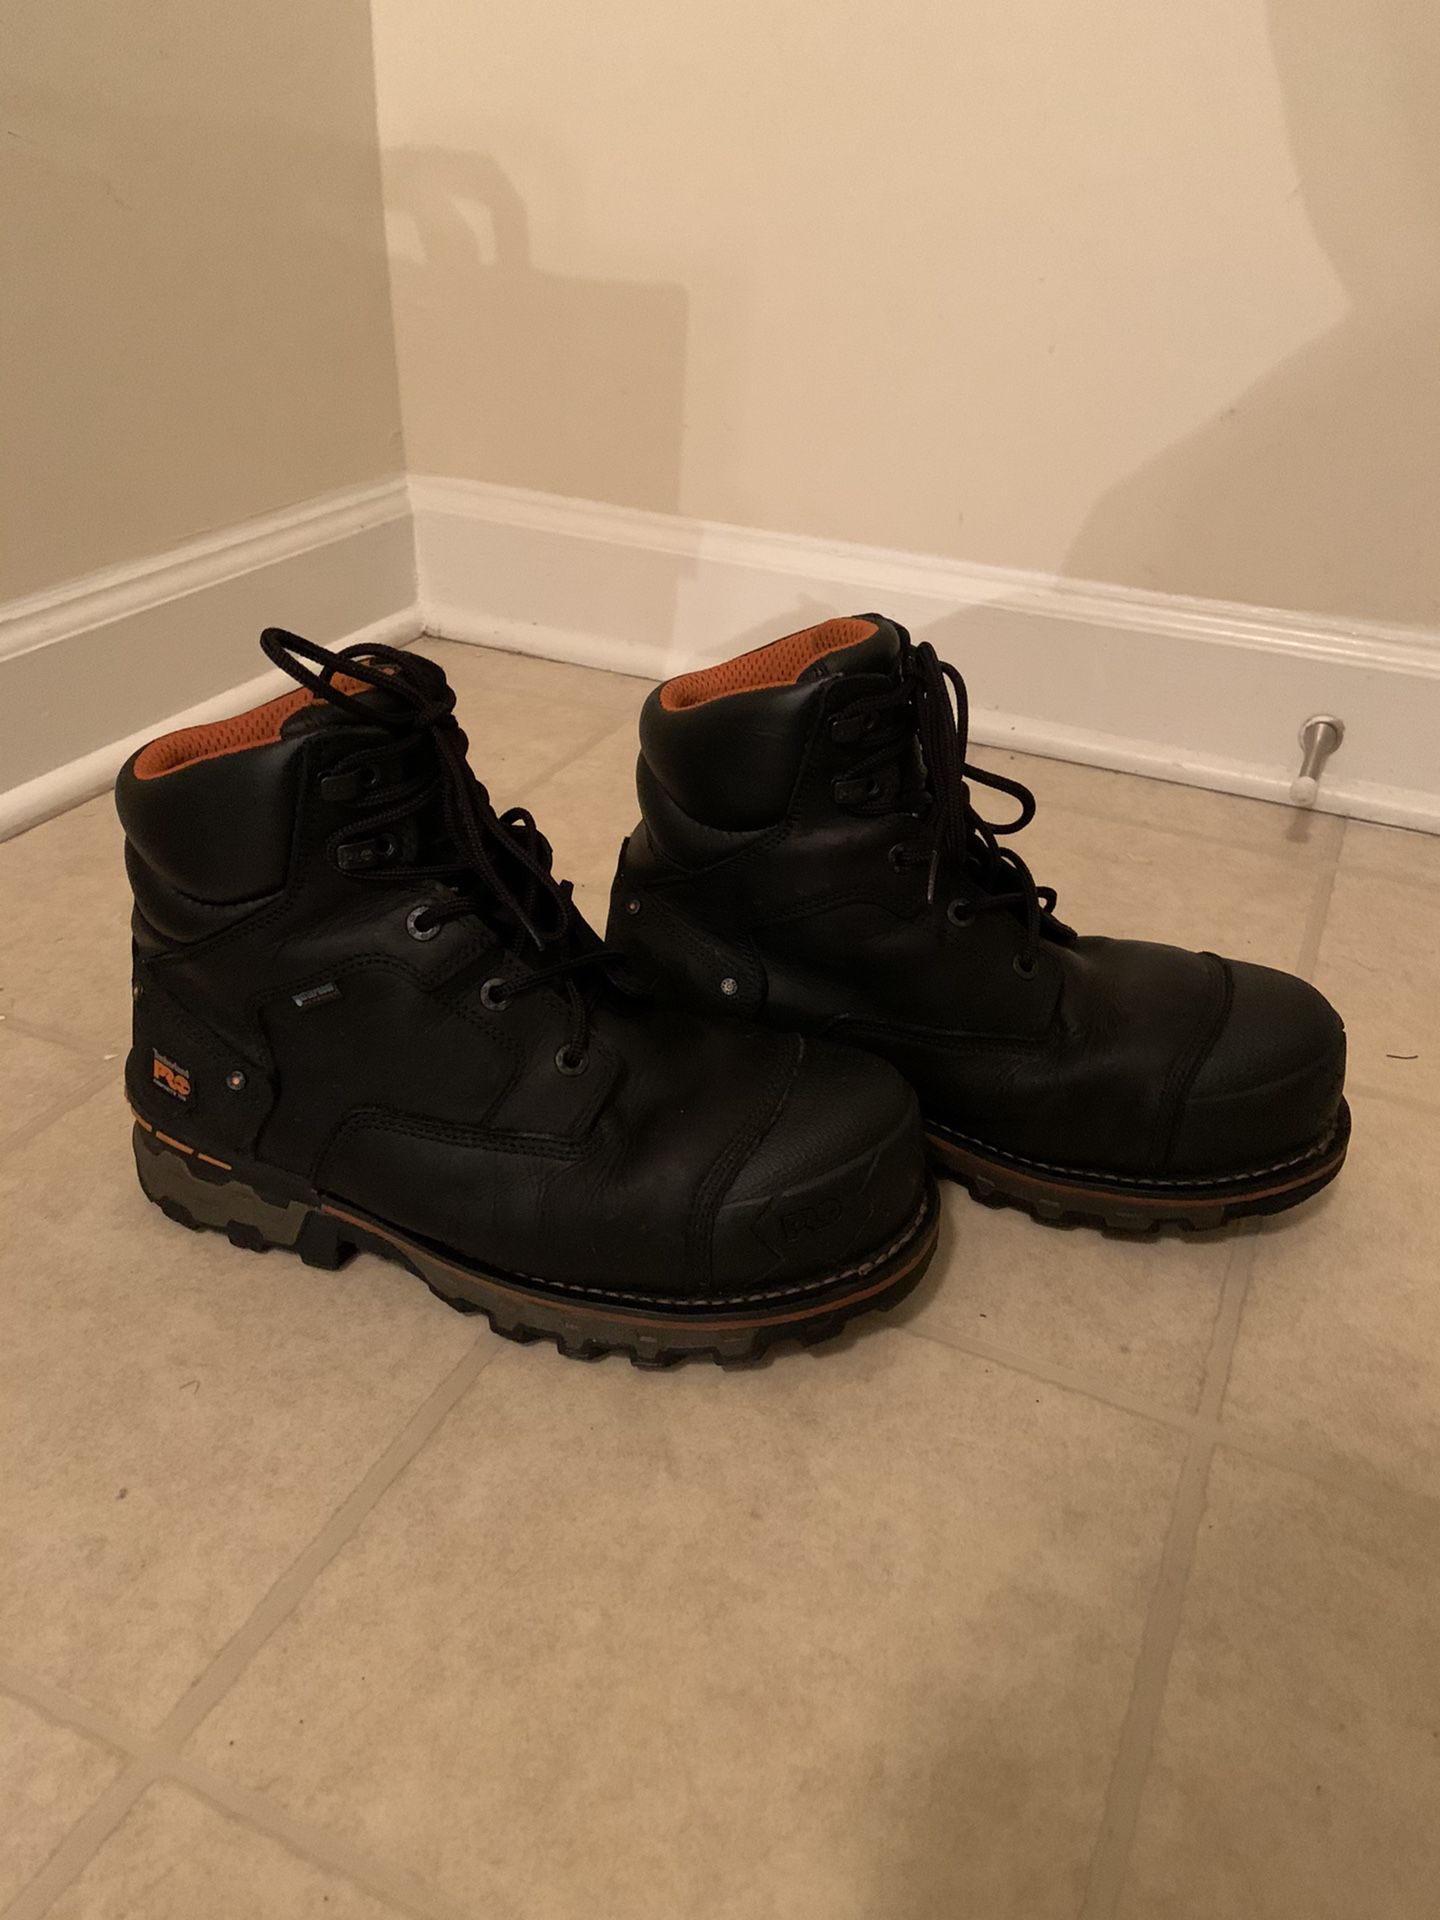 Heavy Duty Timberland Pro Work Boots, Waterproof, Steel Toe, Sturdy